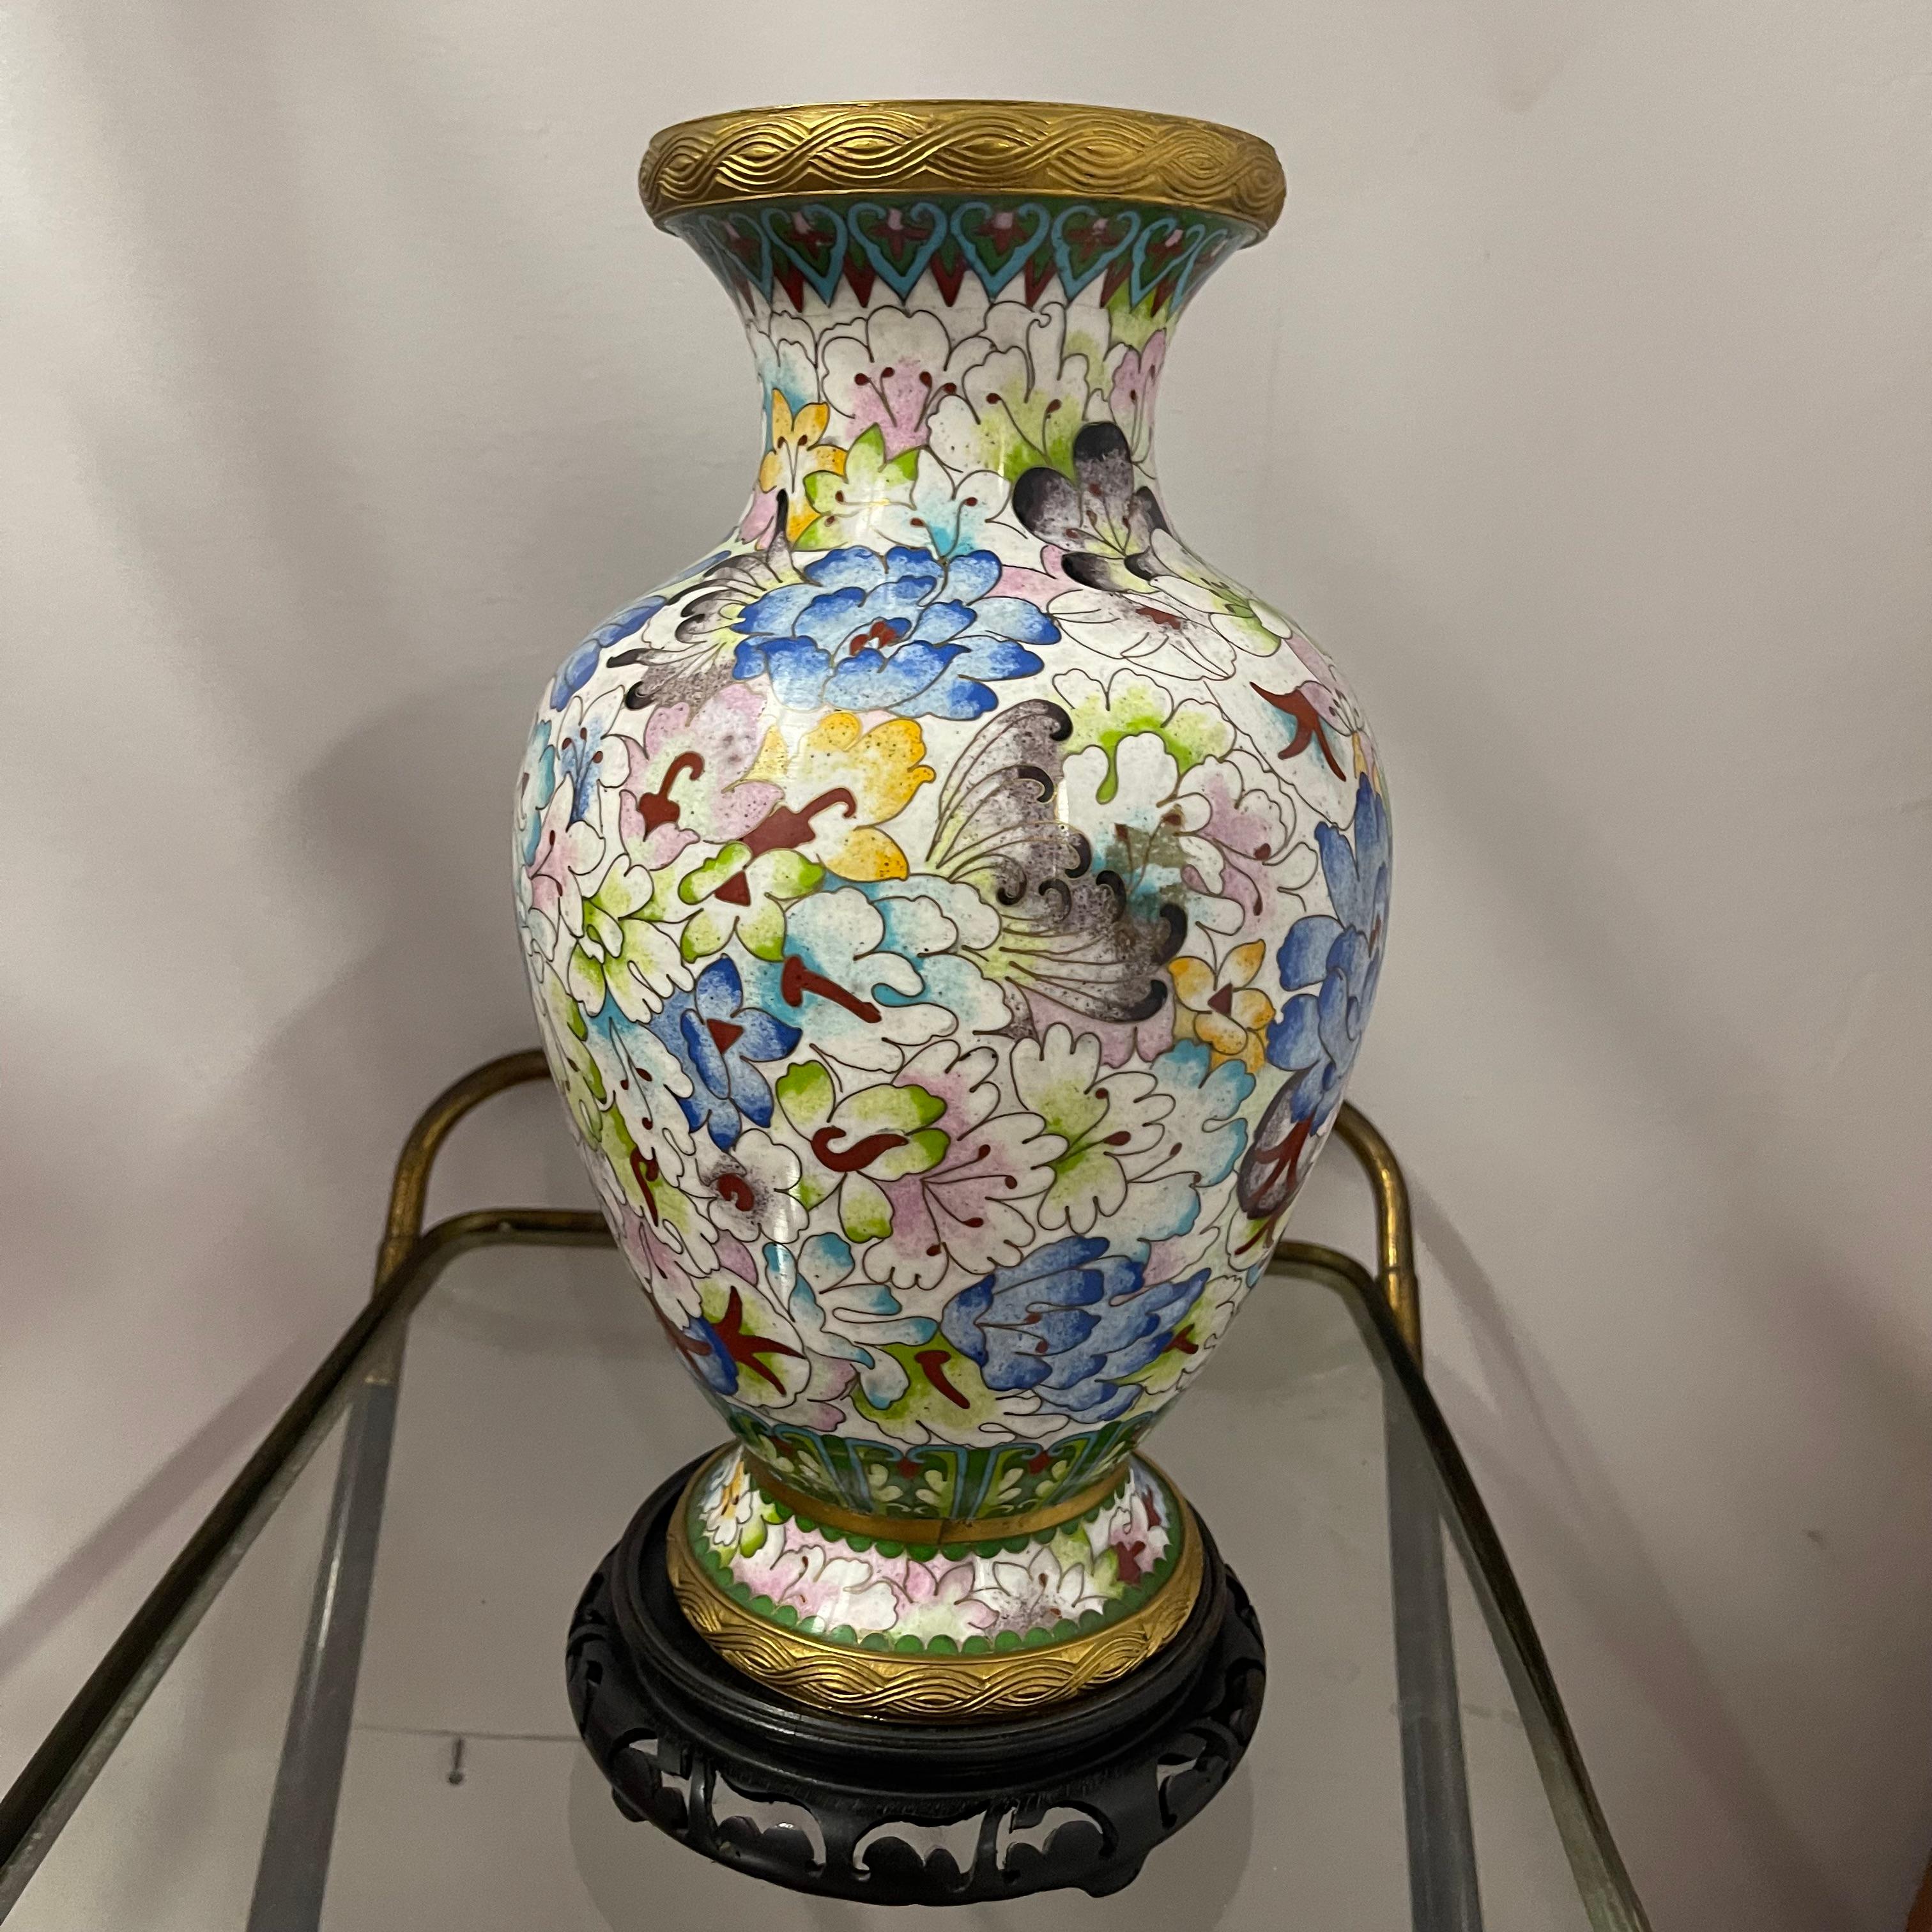 Grande vaso cinese cloisonné  con decorazione floreale a tutto tondo. la circonferenza dell'imboccatura, ha un labbro in bronzo dorato, finemente lavorato ad incisione sulla parte superiore e un anello sulla base. Splendidamente realizzato e